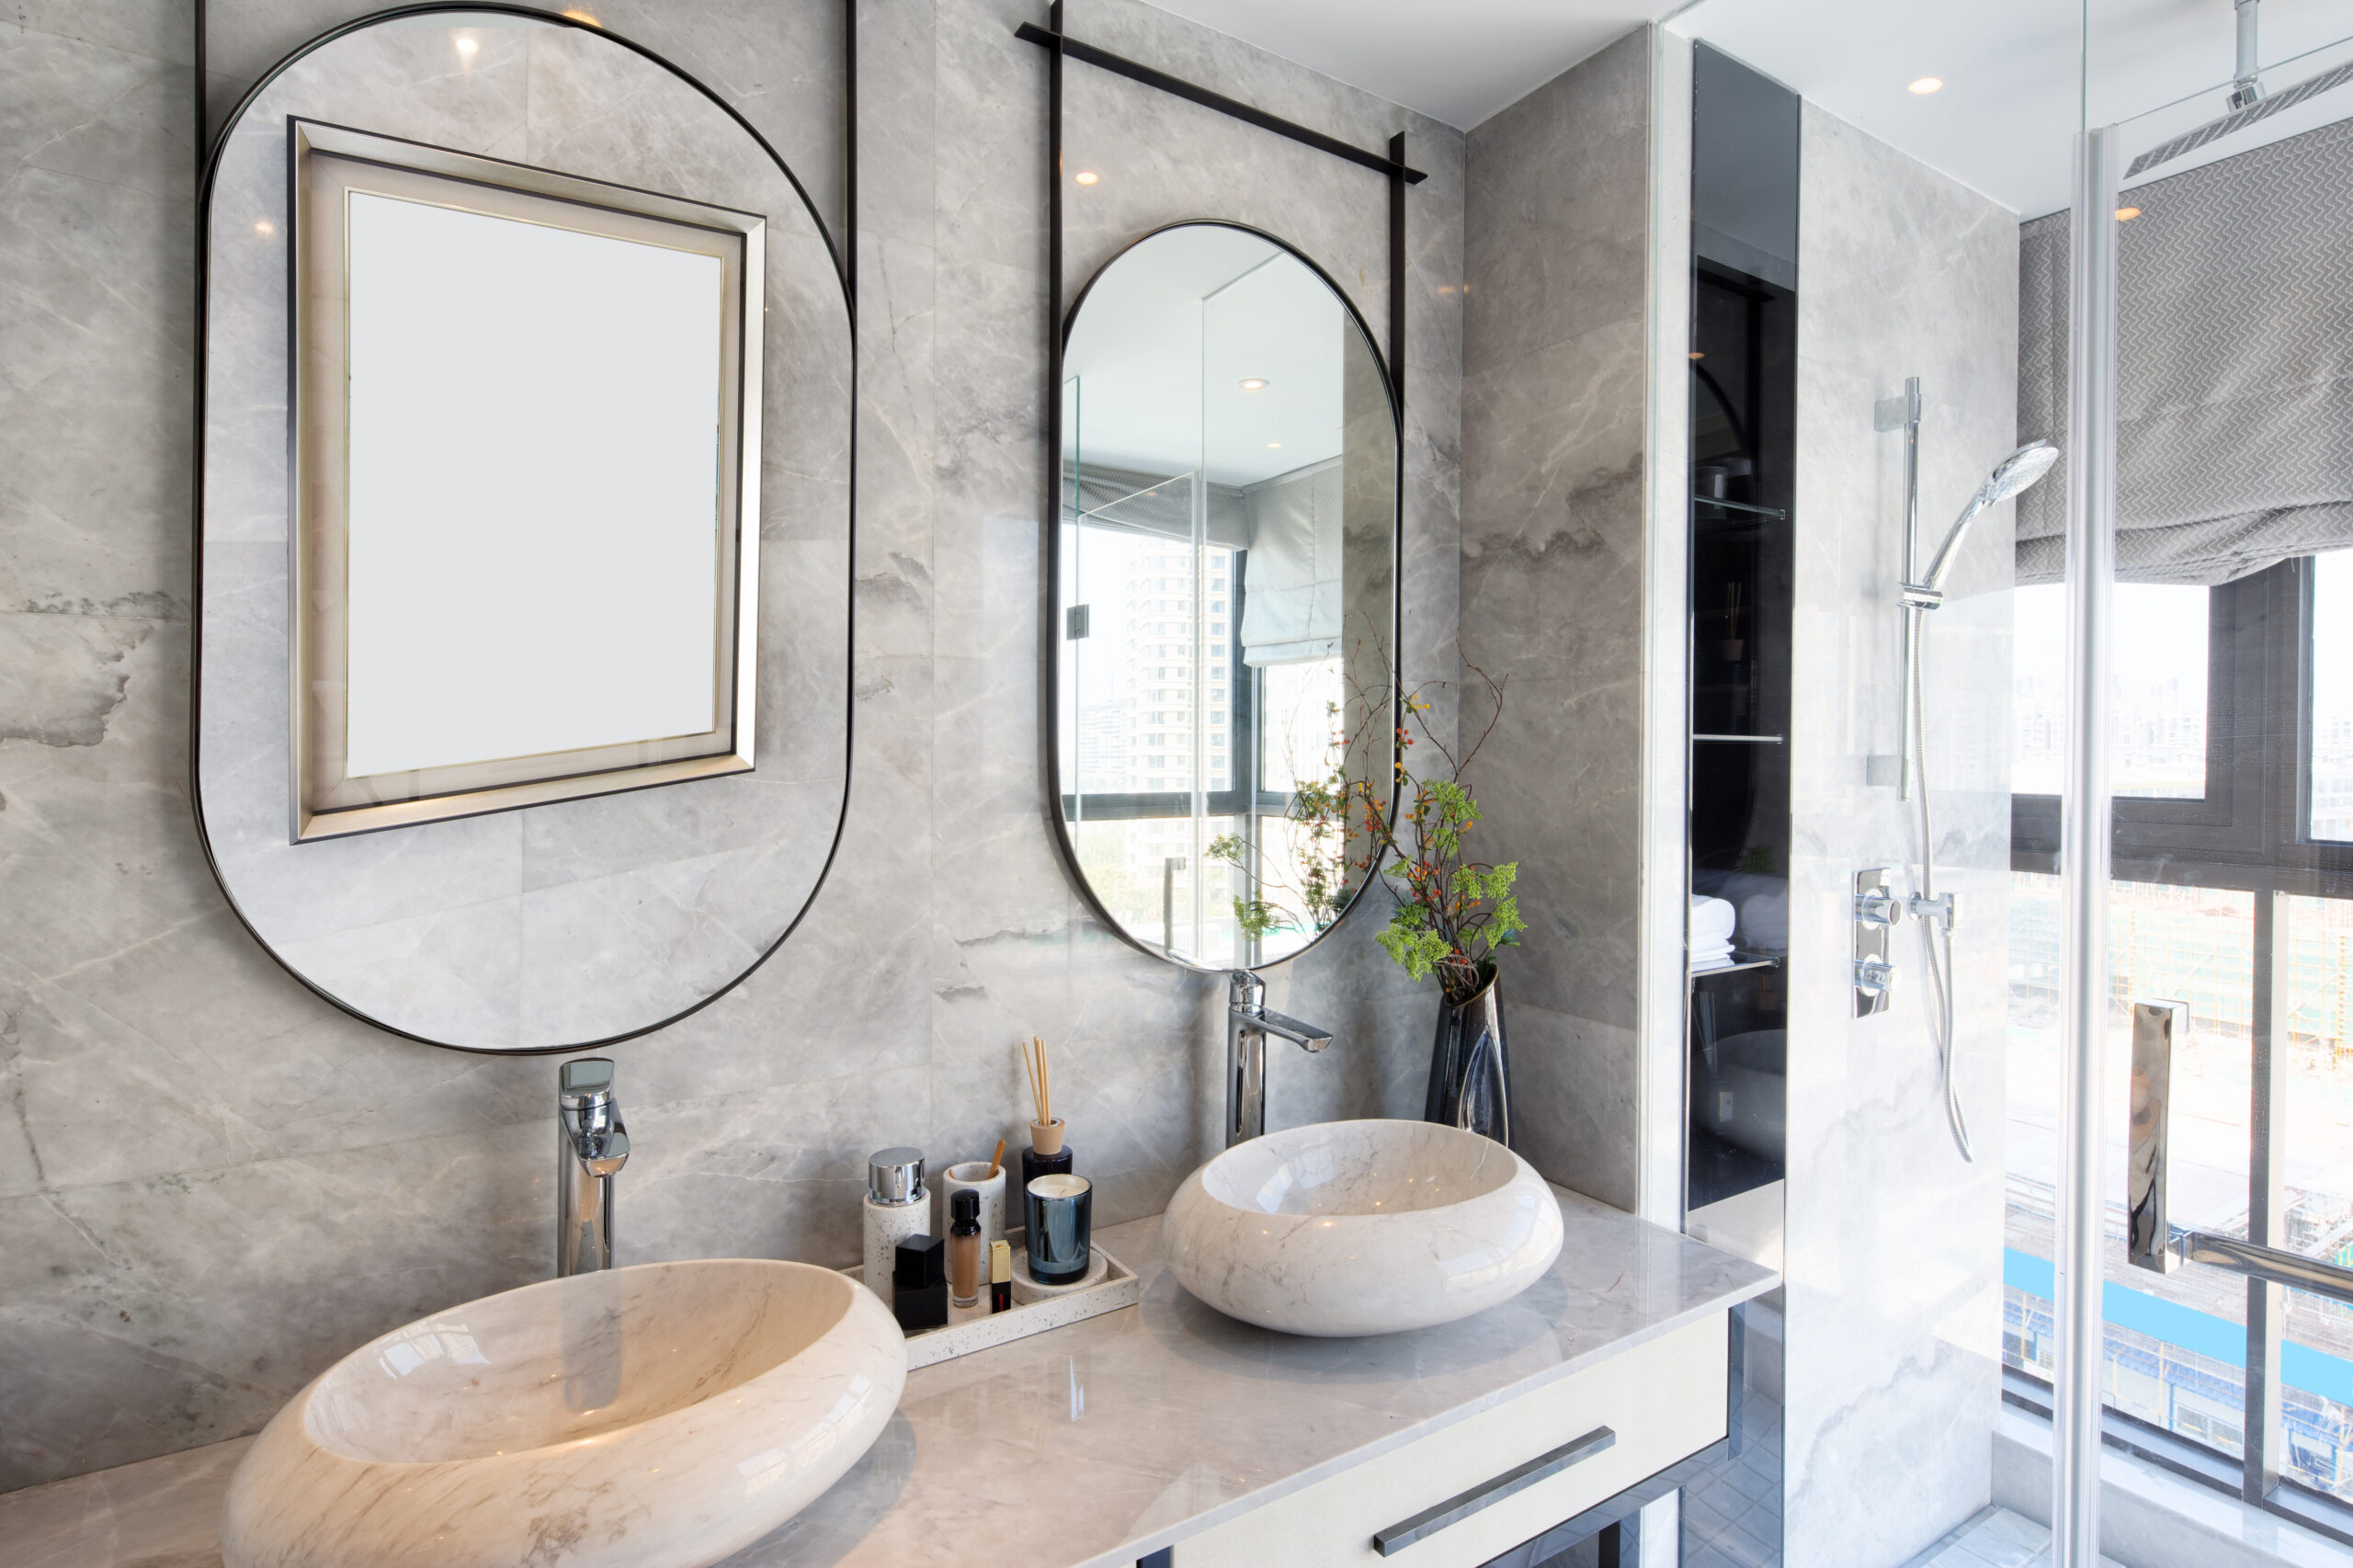 Banheiro elegante em tons marmorizados, espelho em metalon e cubas esculpidas